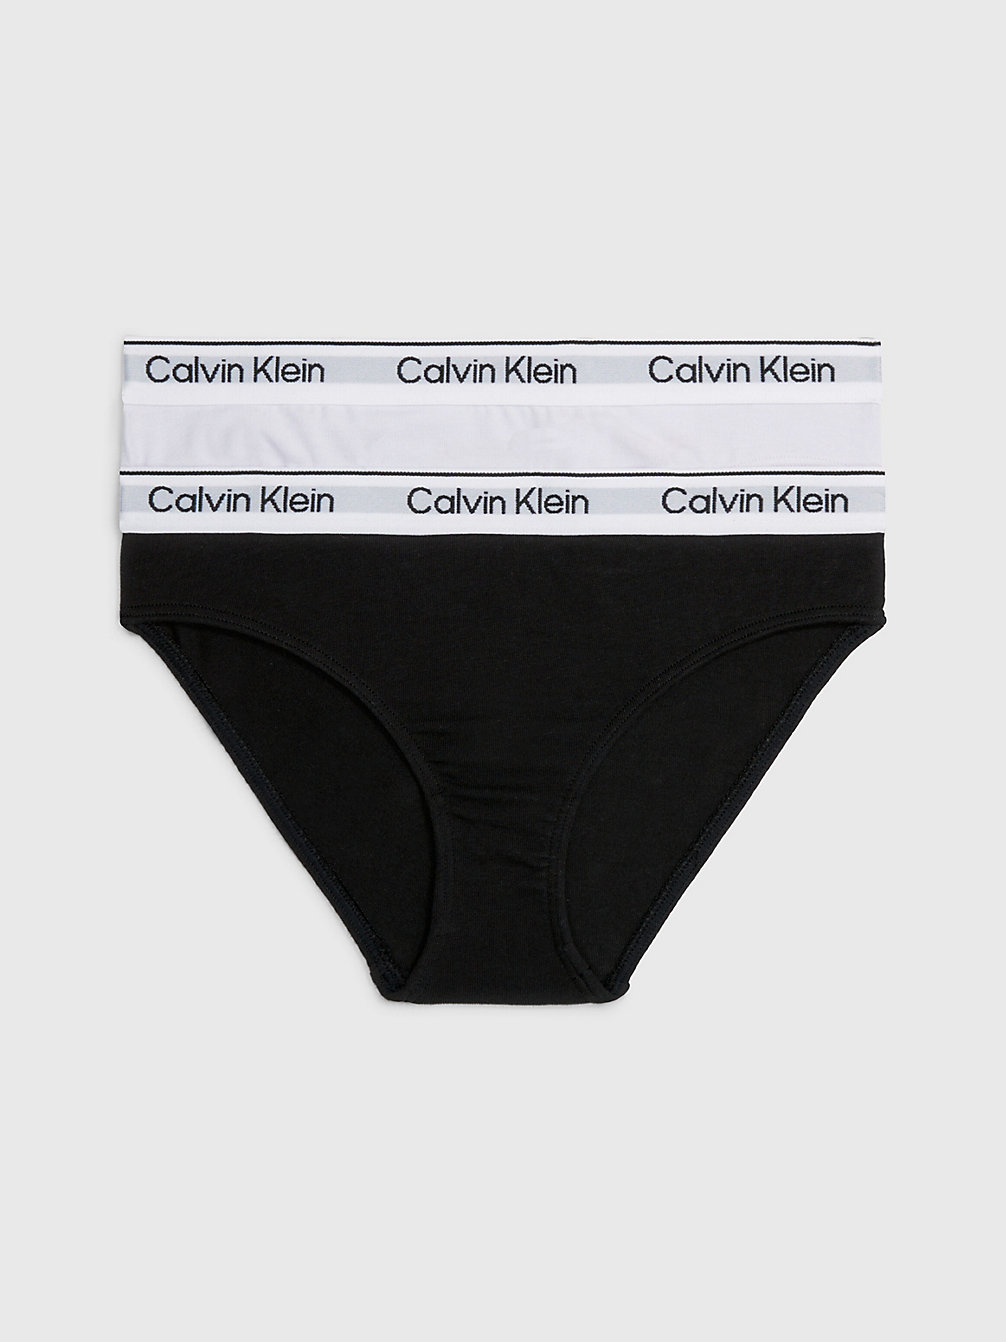 LAVENDERSPLASH/PVHBLACK 2er-Pack Slips Für Mädchen - Modern Cotton undefined Maedchen Calvin Klein